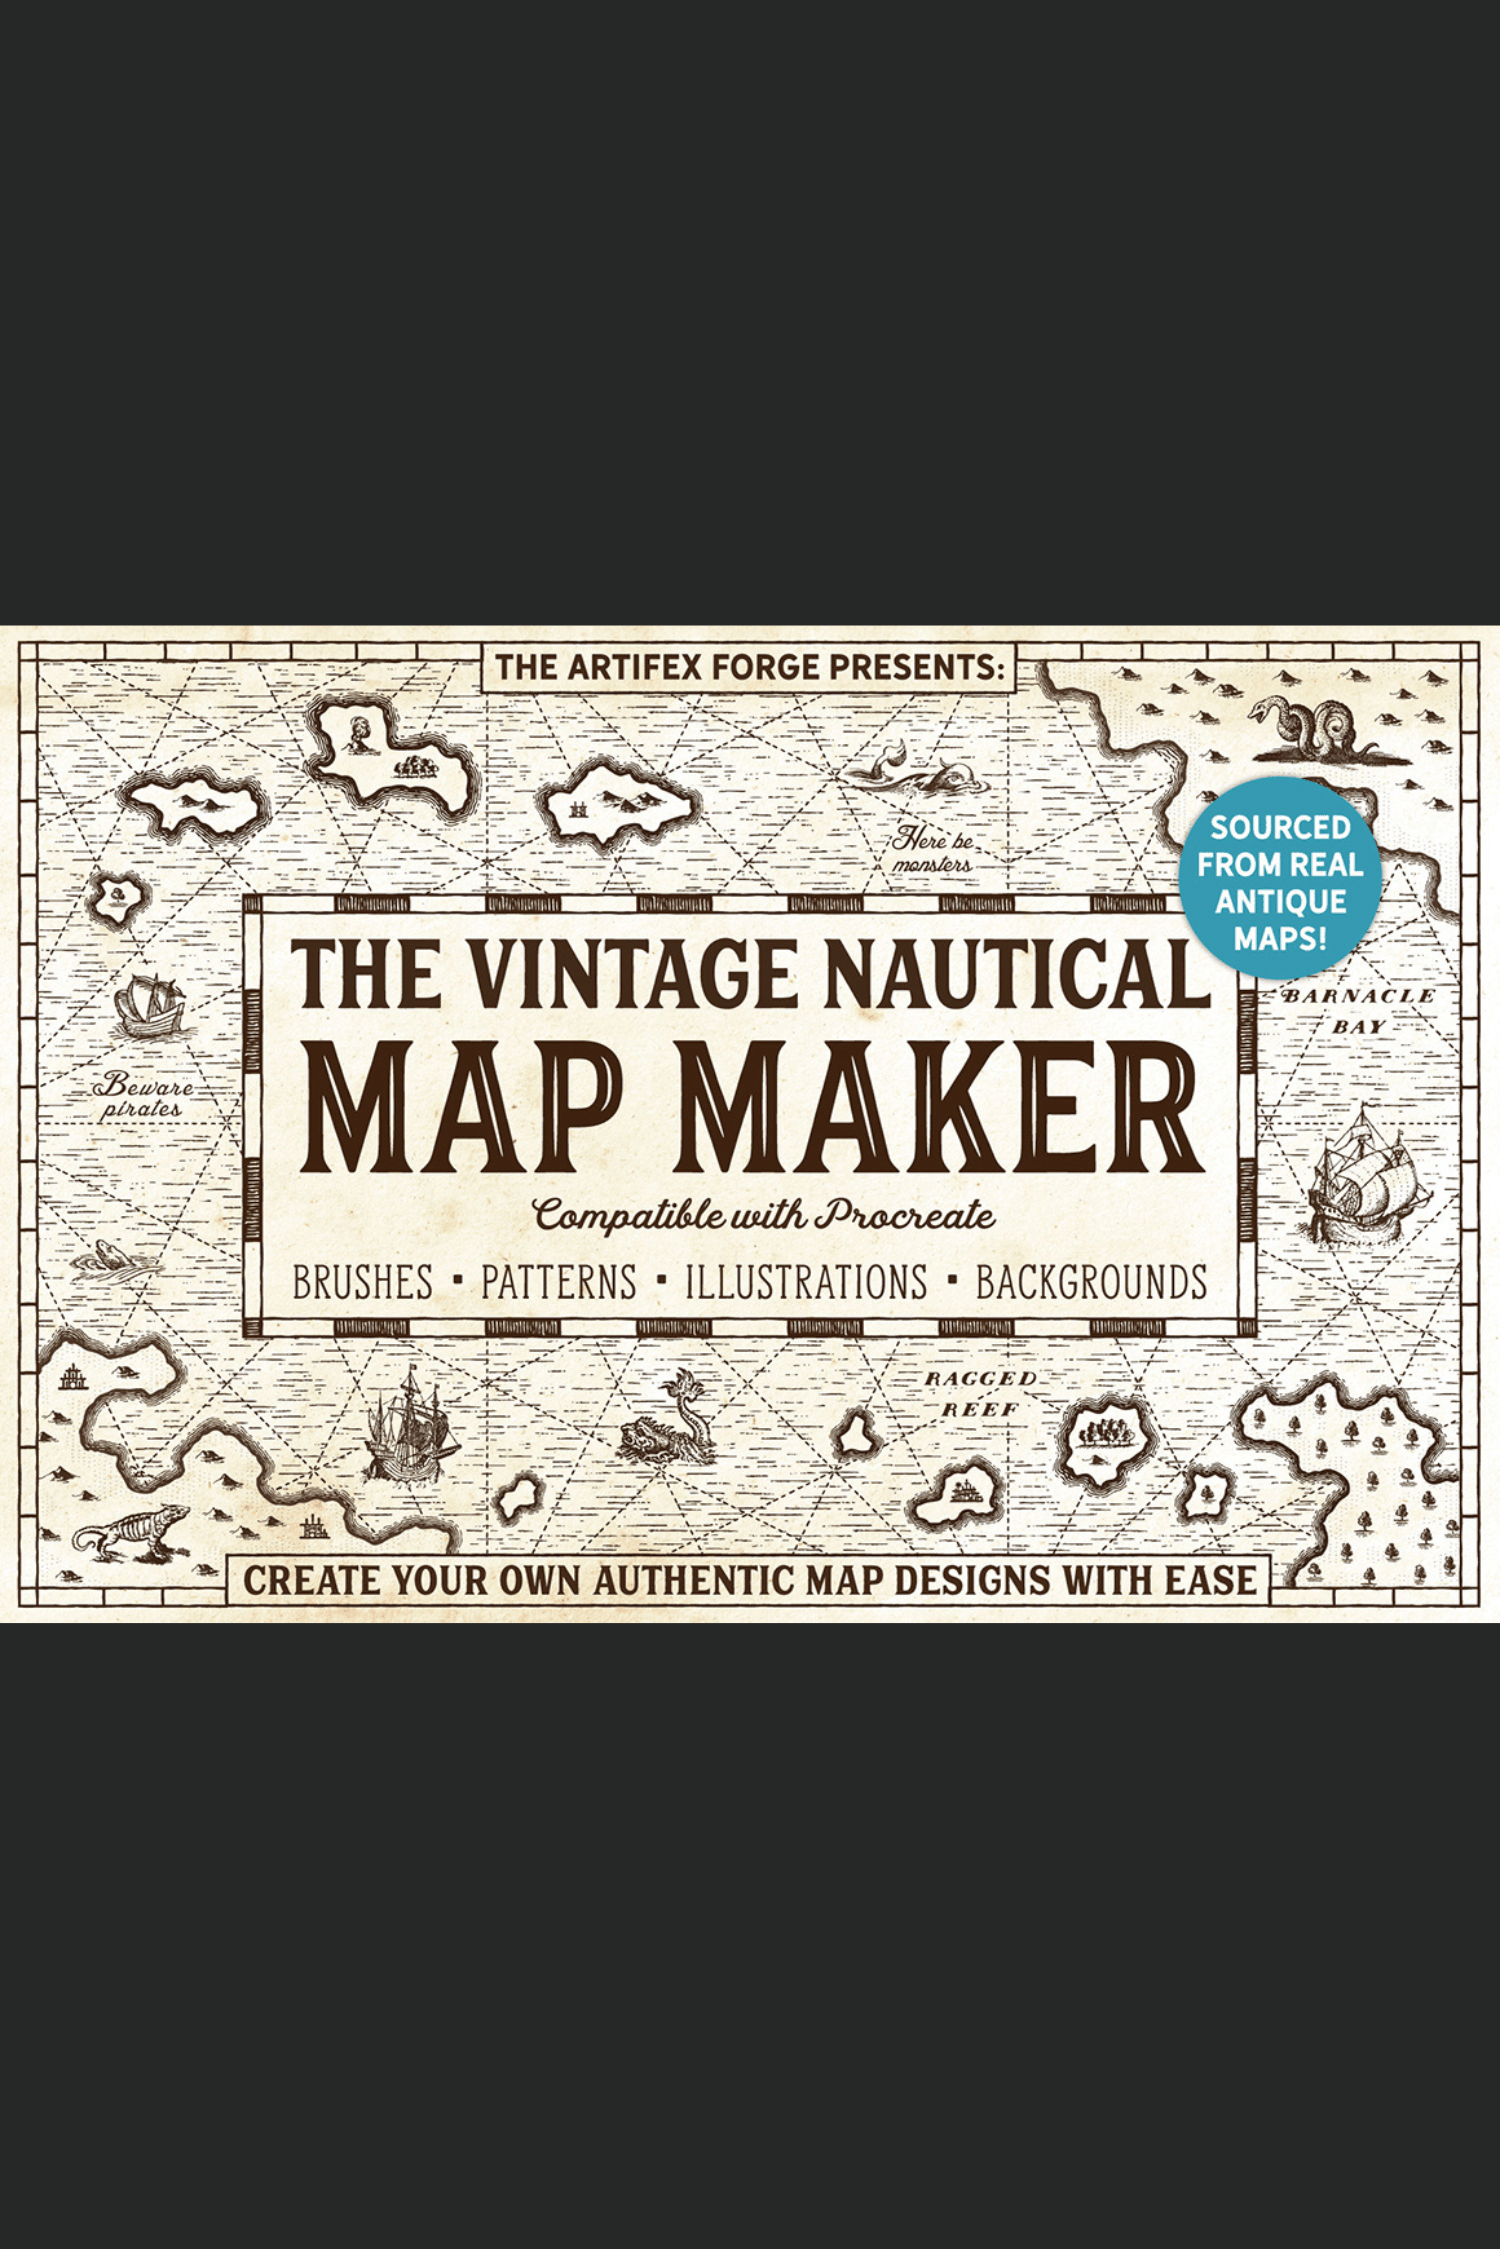 Das Vintage Nautical Map Maker Toolkit von Artifex Forge